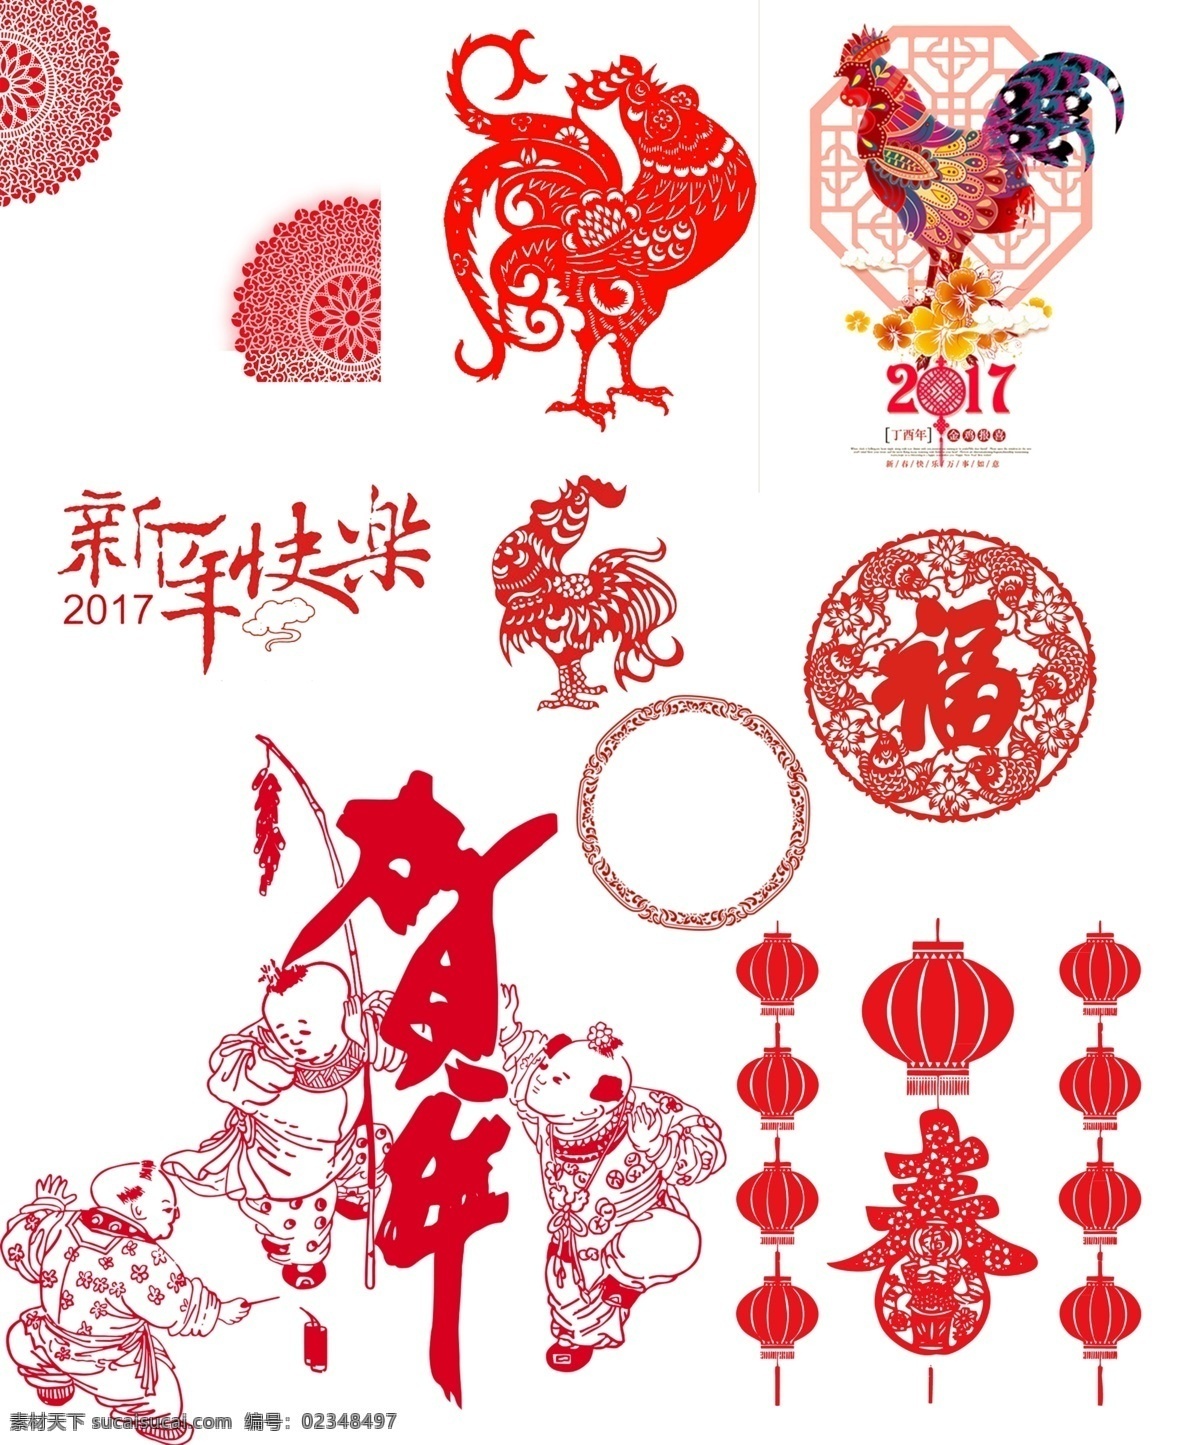 中国文化素材 新年快乐 贺新年 福 新春 大公鸡